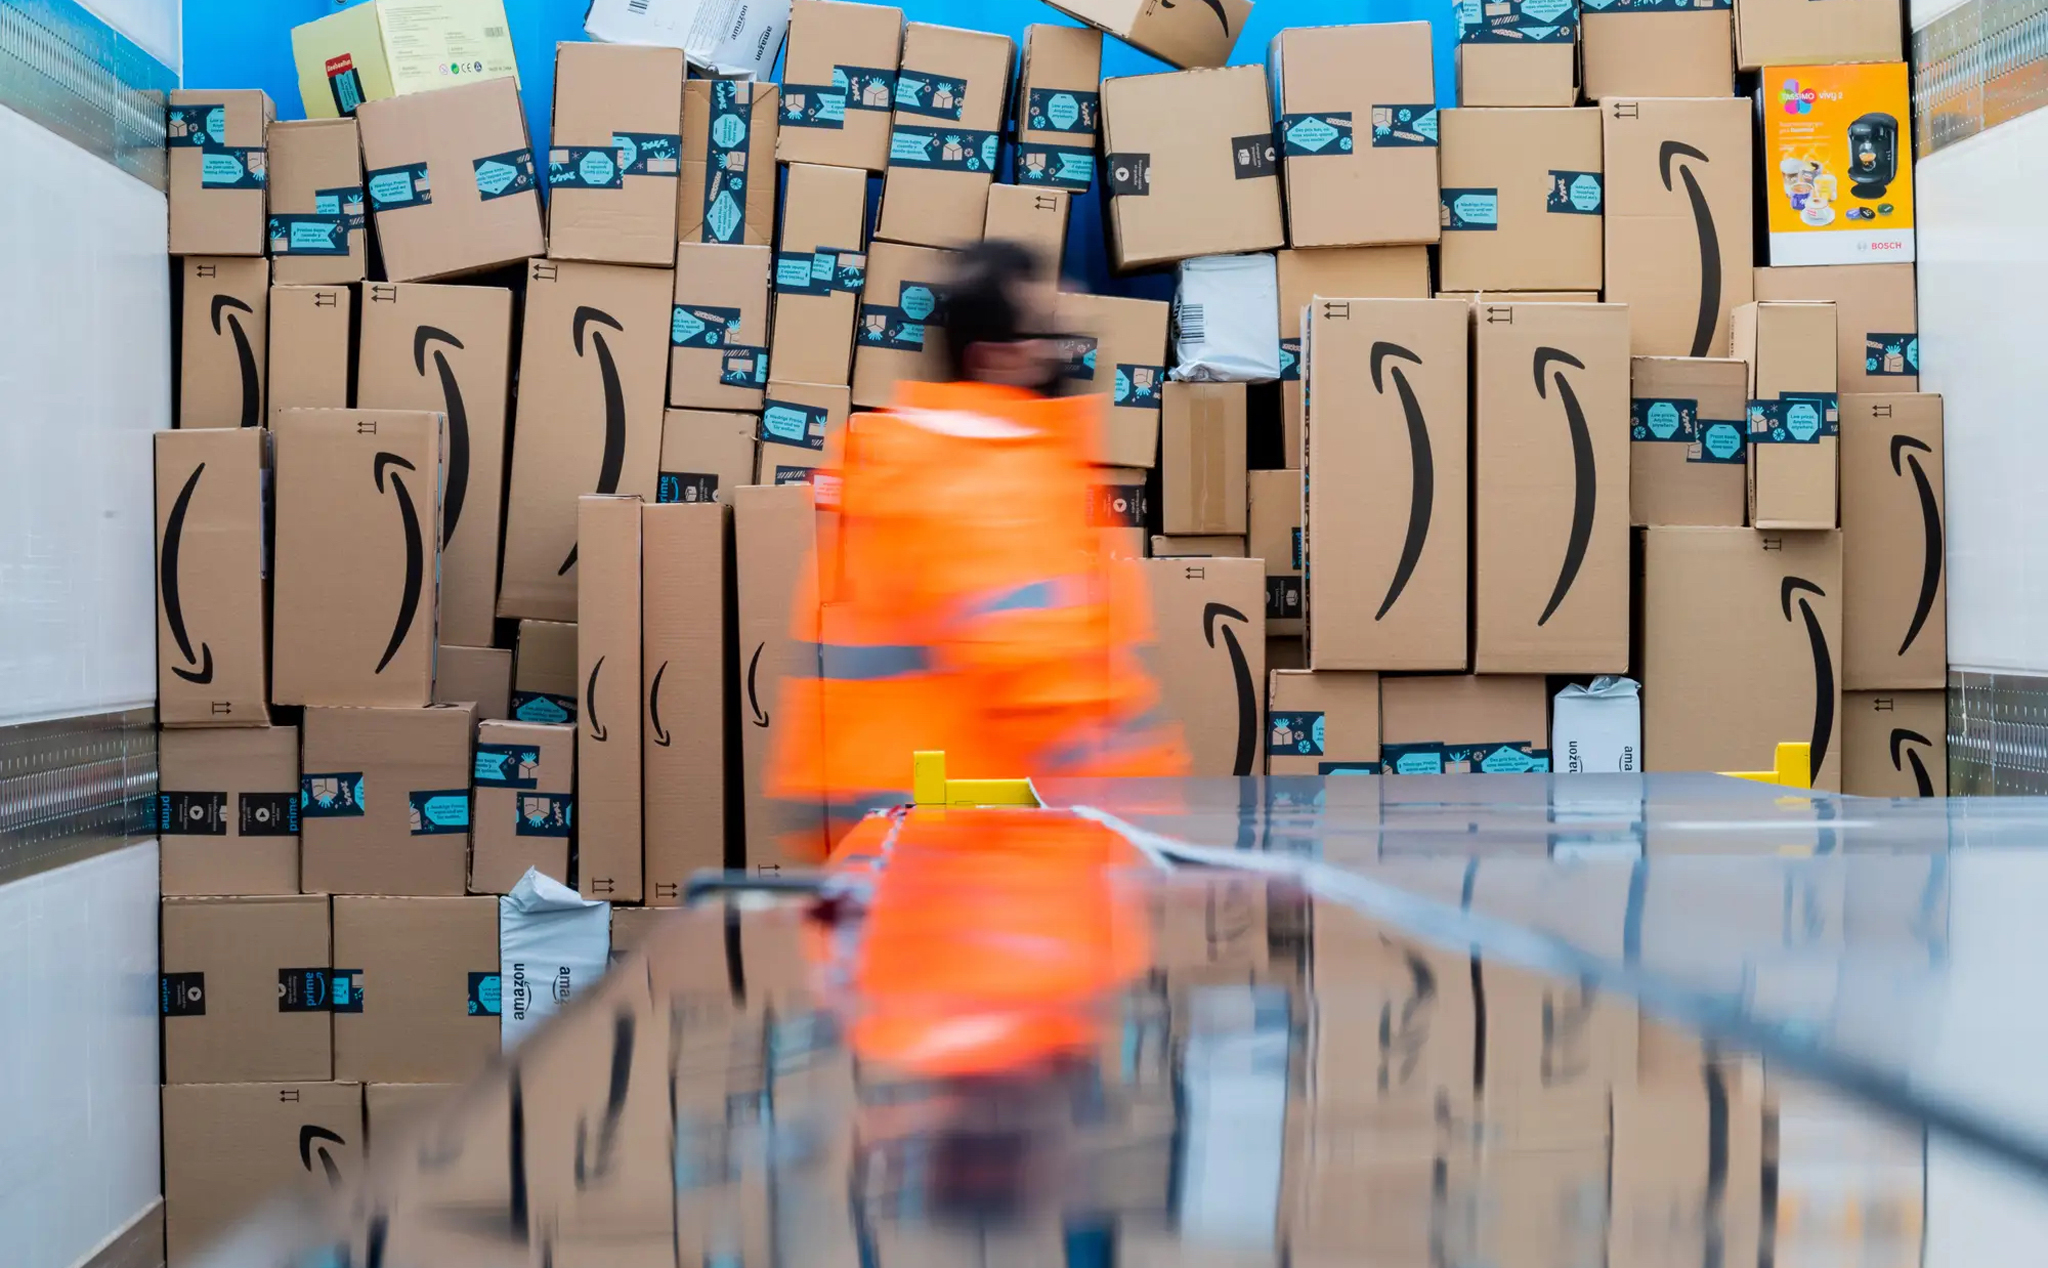 Amazon bị tố chơi bẩn: Sao chép sản phẩm, gian lận tìm kiếm và ưu tiên các sản phẩm "nhà làm"